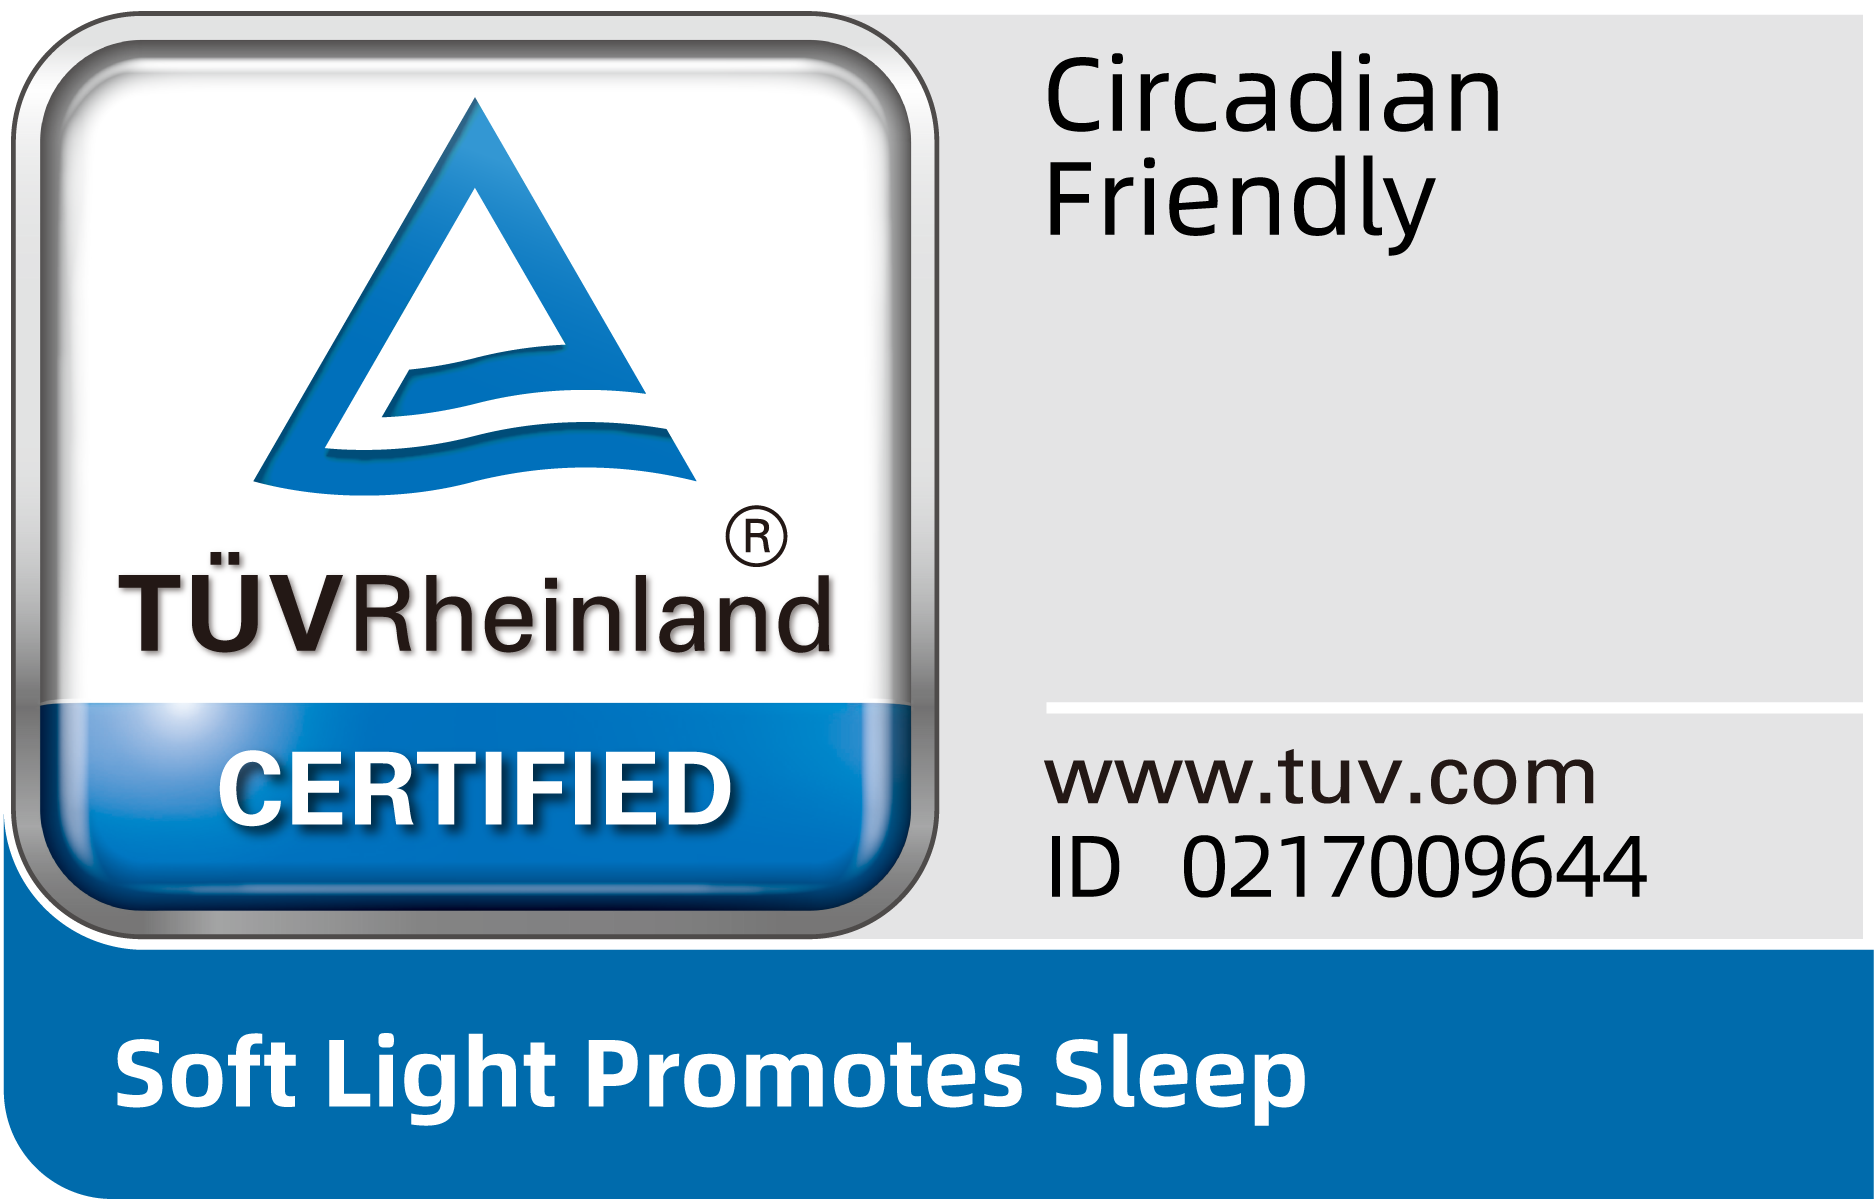 TÜV Rheinland sertifikat za prilagođenost cirkadijalnom ritmu.